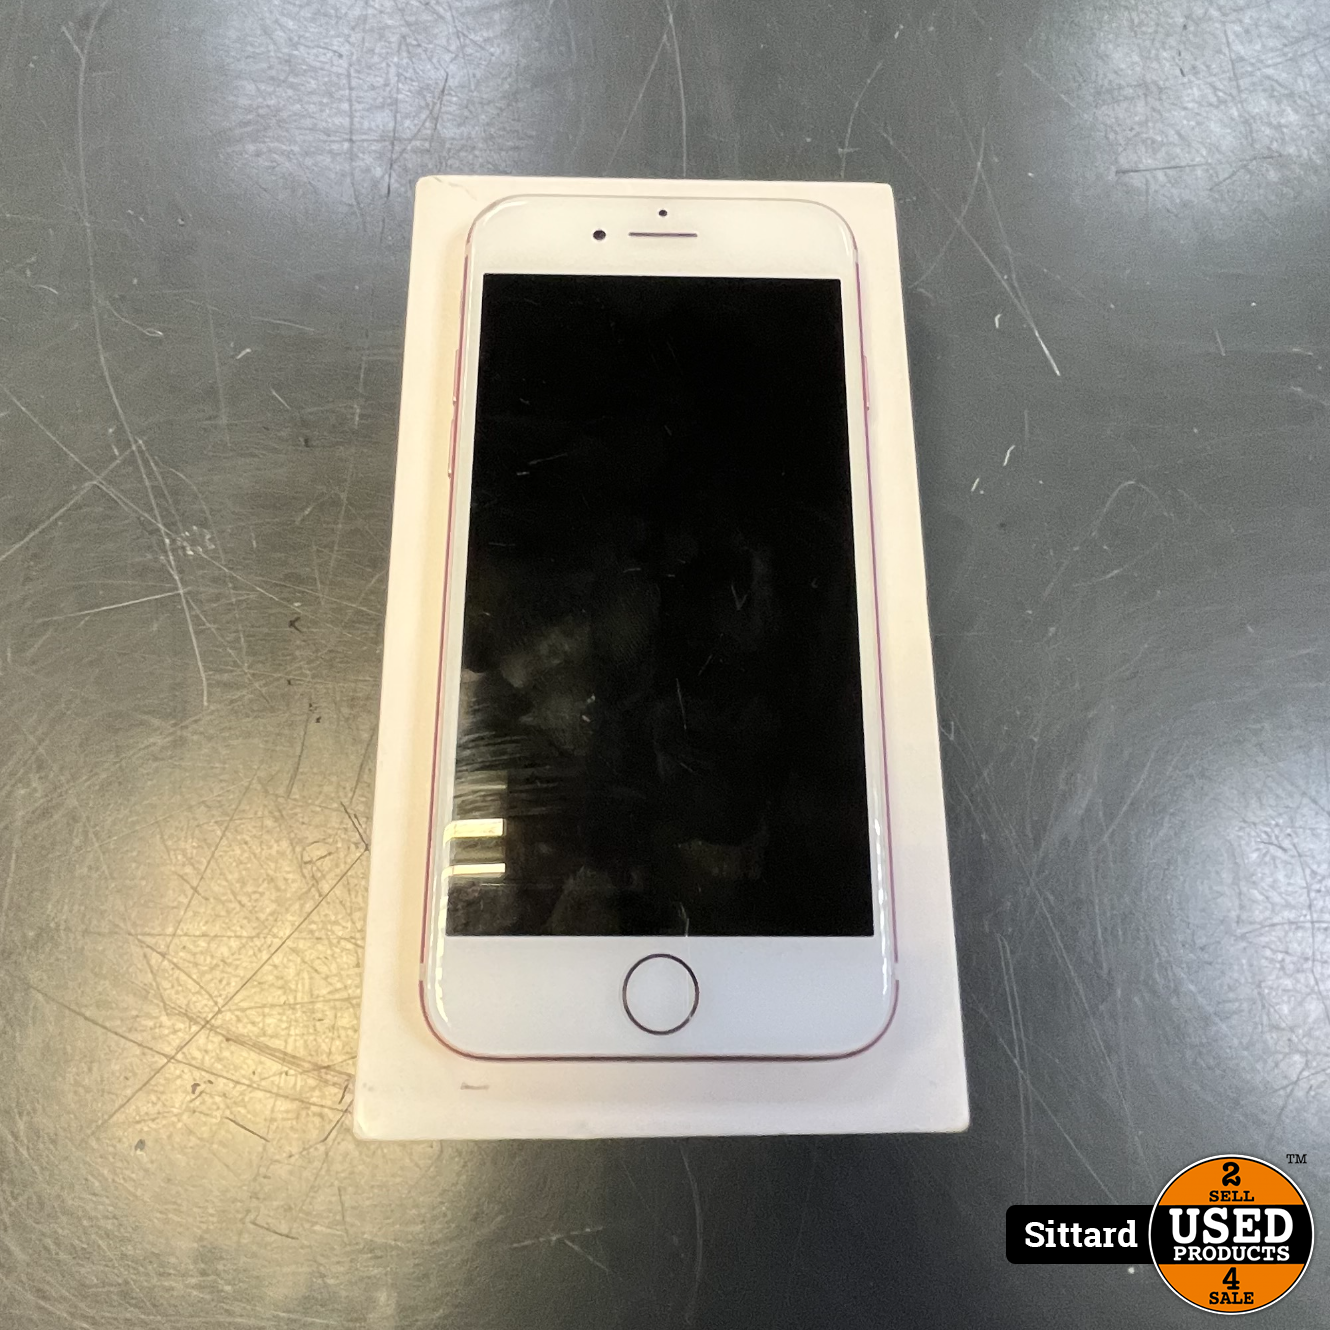 Politie slaaf Regan Apple iPhone 7, 32GB, Roze, In nette staat, Compleet met doos - Used  Products Sittard